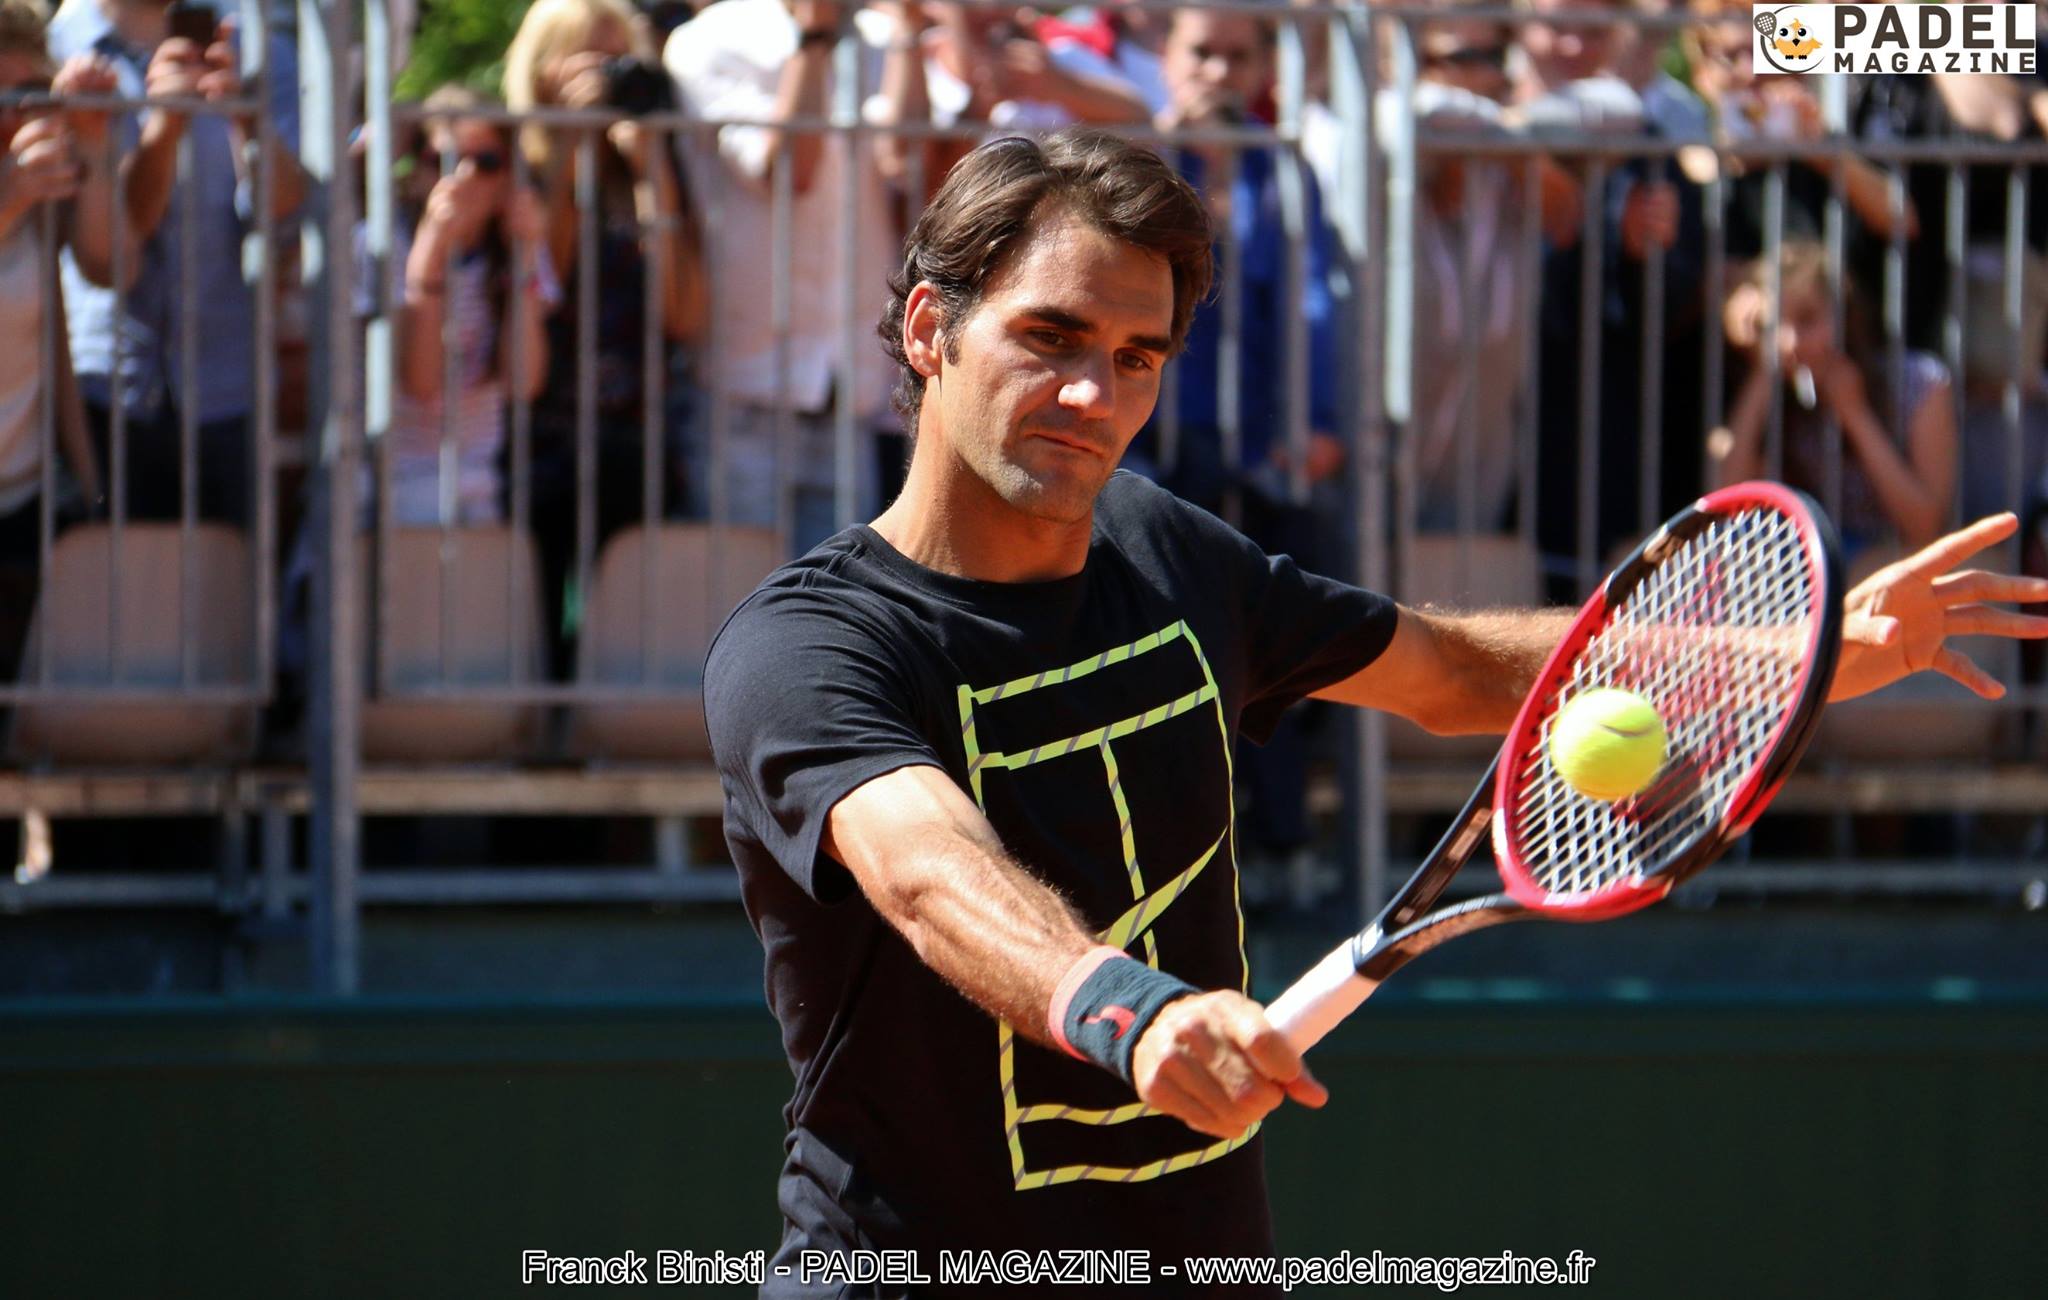 Roger Federer em padel : sonho ou realidade futura?